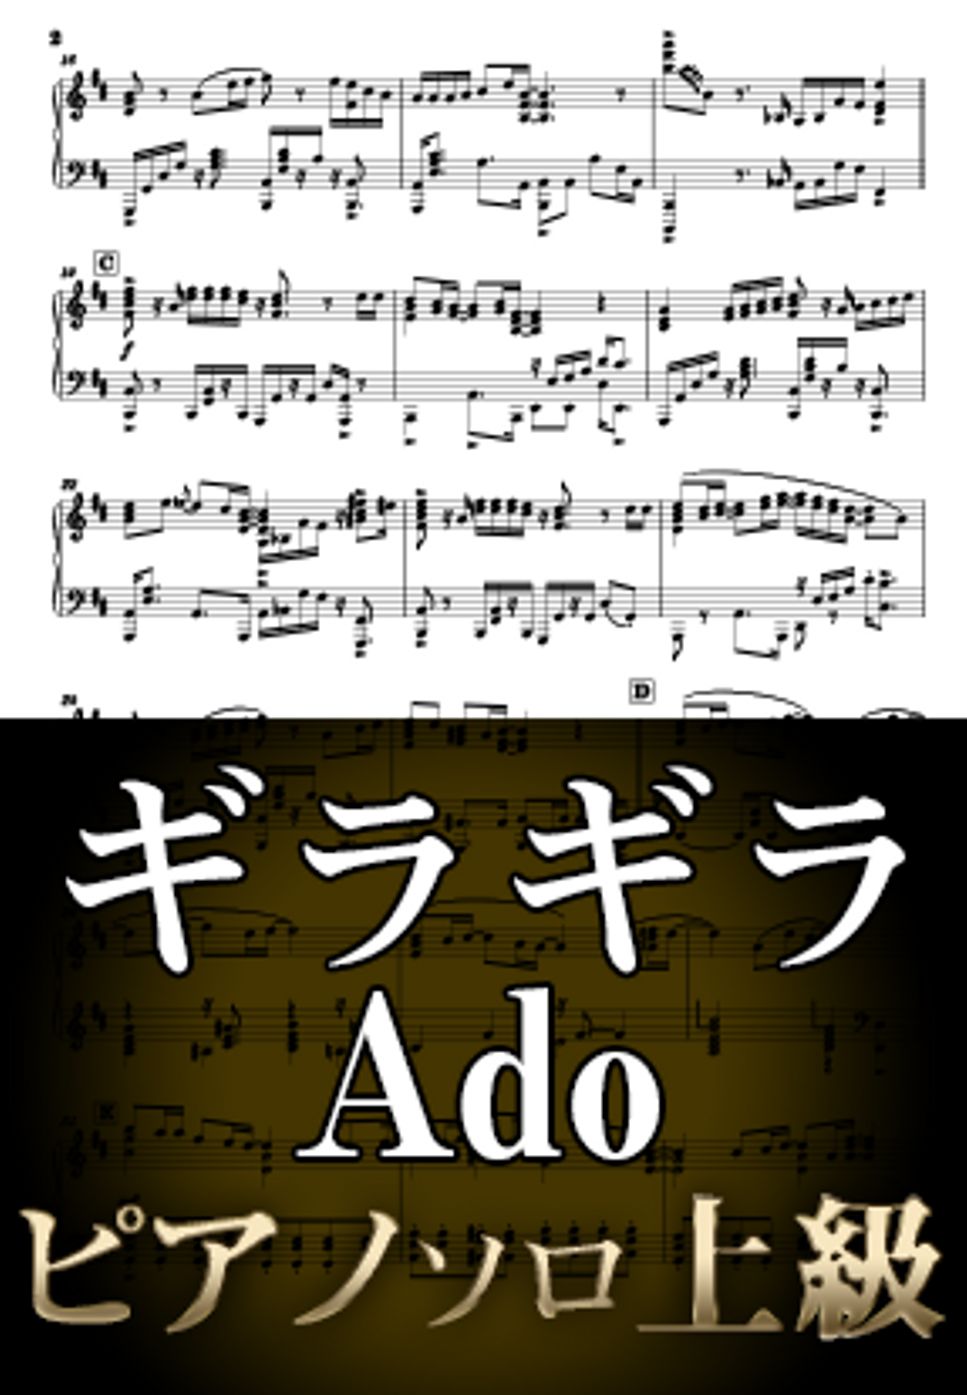 Ado - ギラギラ (ピアノソロ上級) by Suu